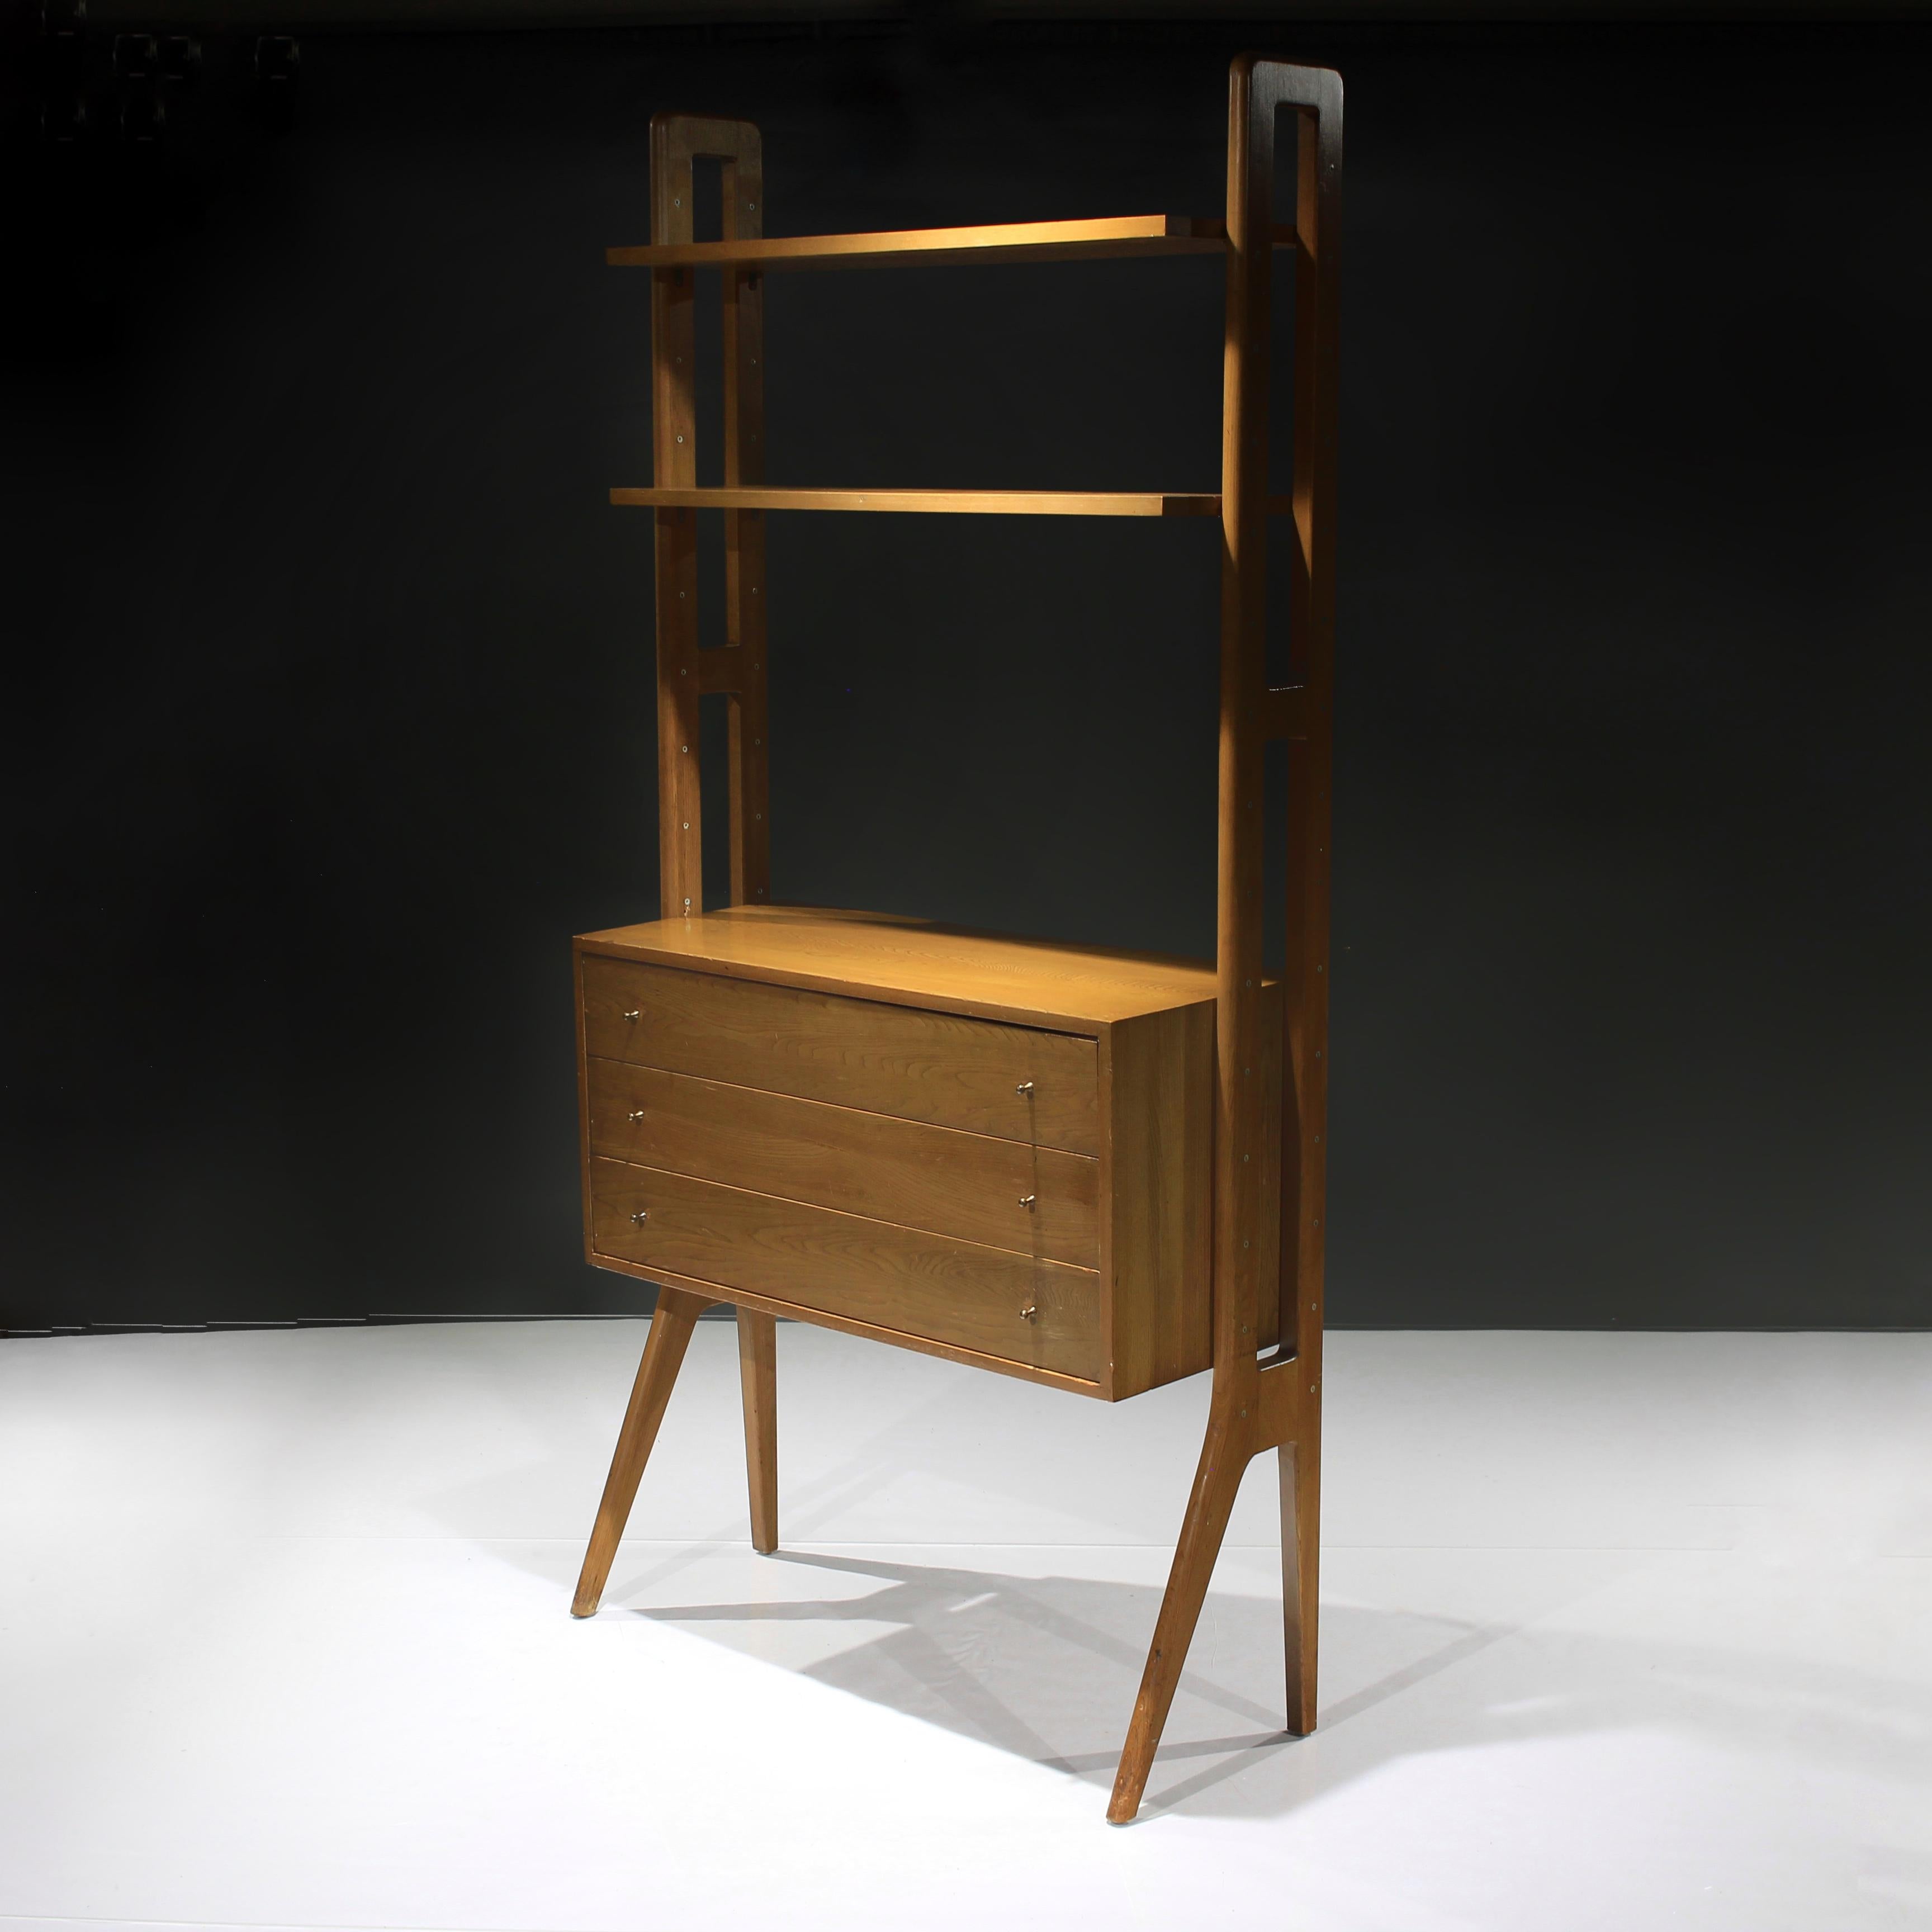 Voici cette magnifique bibliothèque à tiroirs en chêne à la manière de Kurt Østervig du Danemark. Âge approximatif : années 1960.

Un aspect majestueux incroyable avec ses pieds évasés et un élément de design polyvalent tel que le bloc-tiroirs et